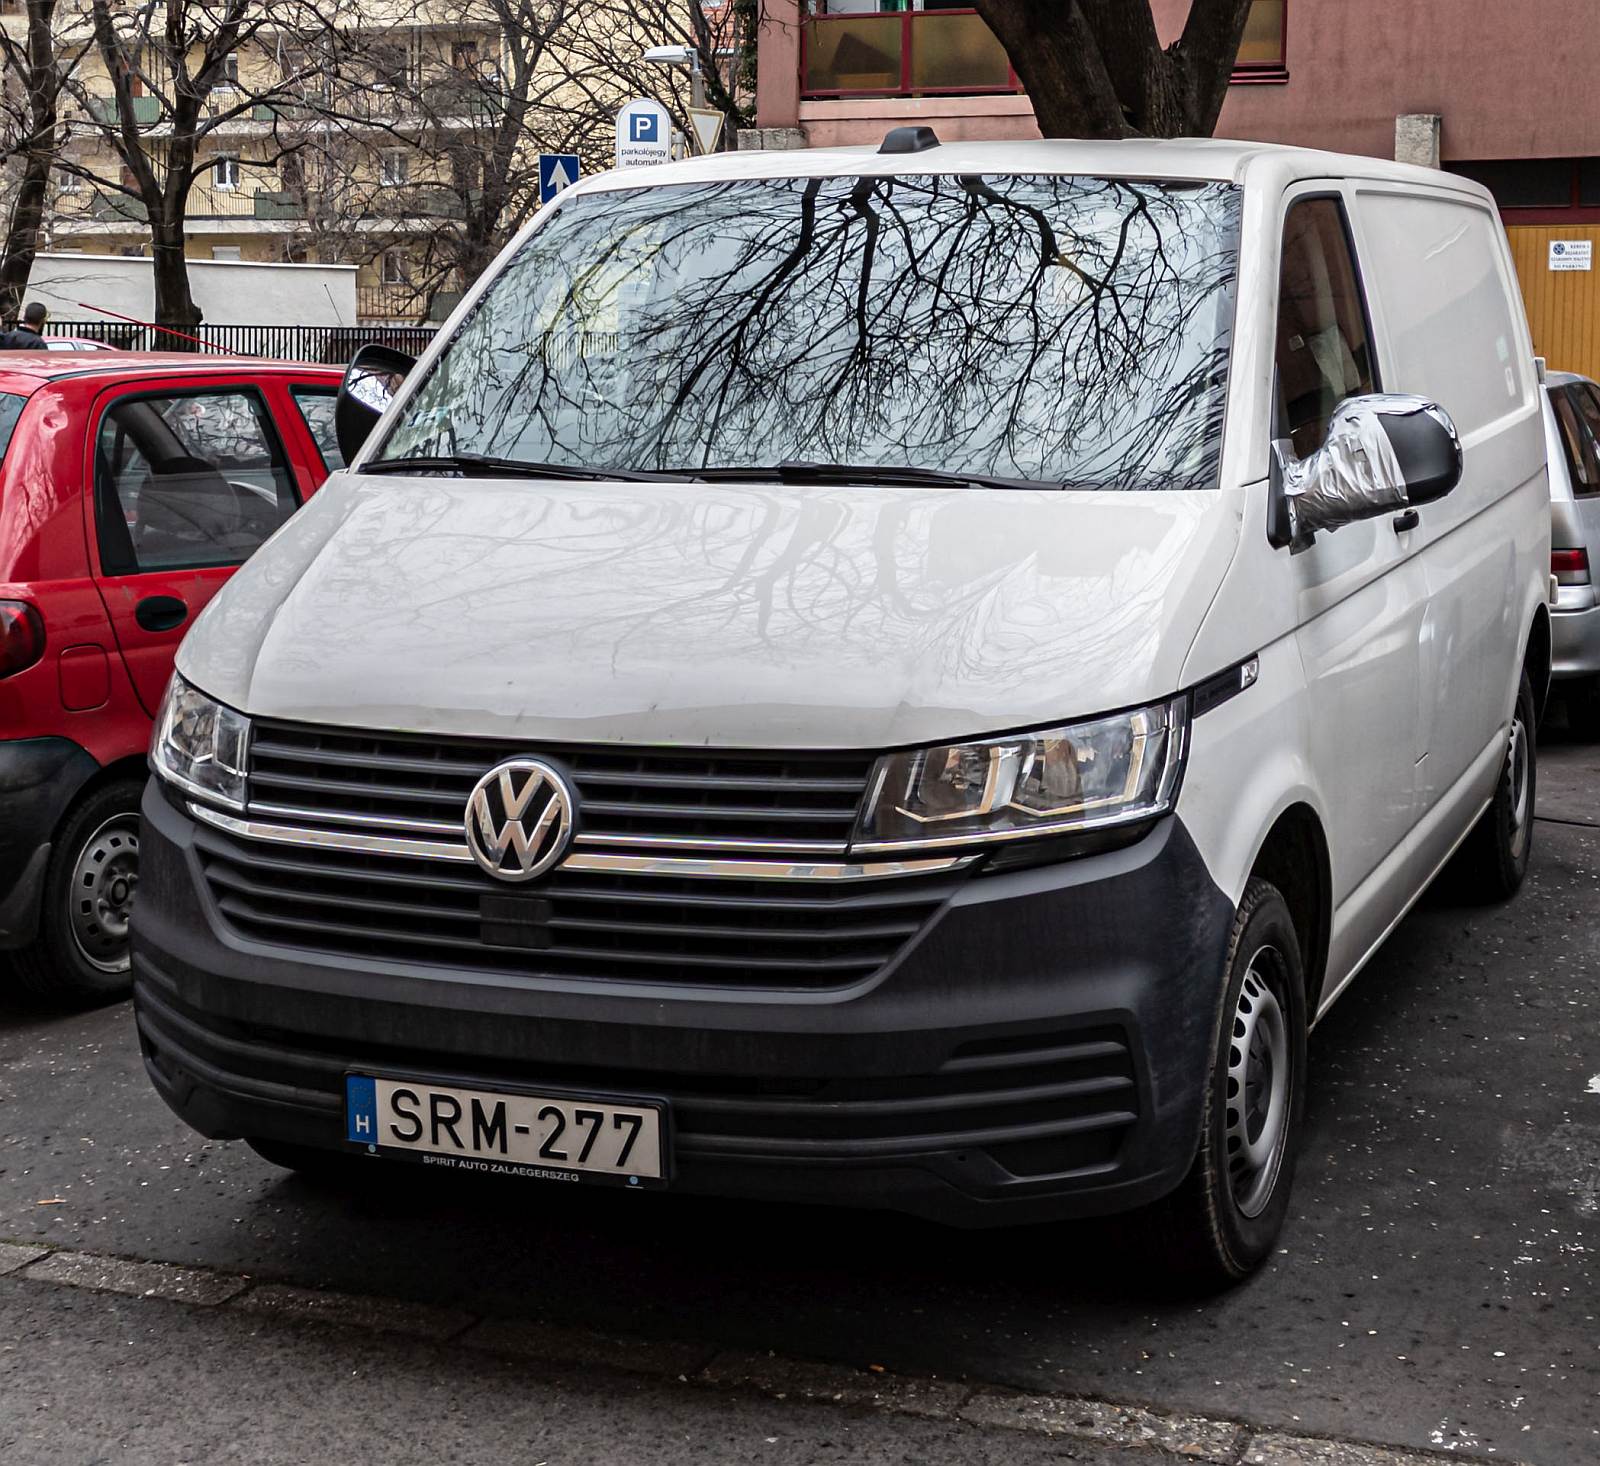 Diesen VW Transporter T6 (Facelift ab 2019) habe ich in März, 2022 fotografiert.